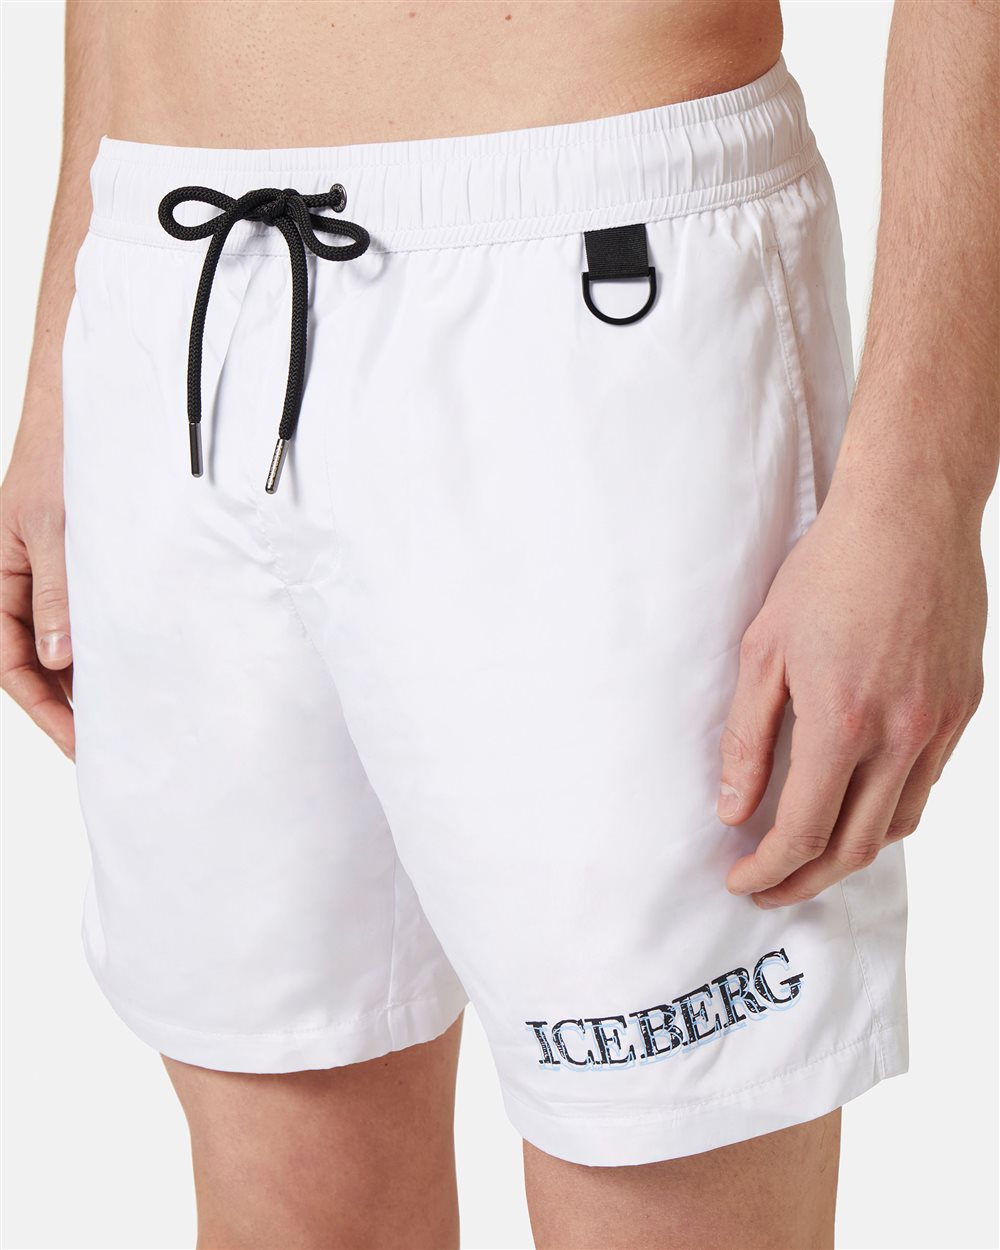 Swim trunks with logo - Iceberg - Official Website